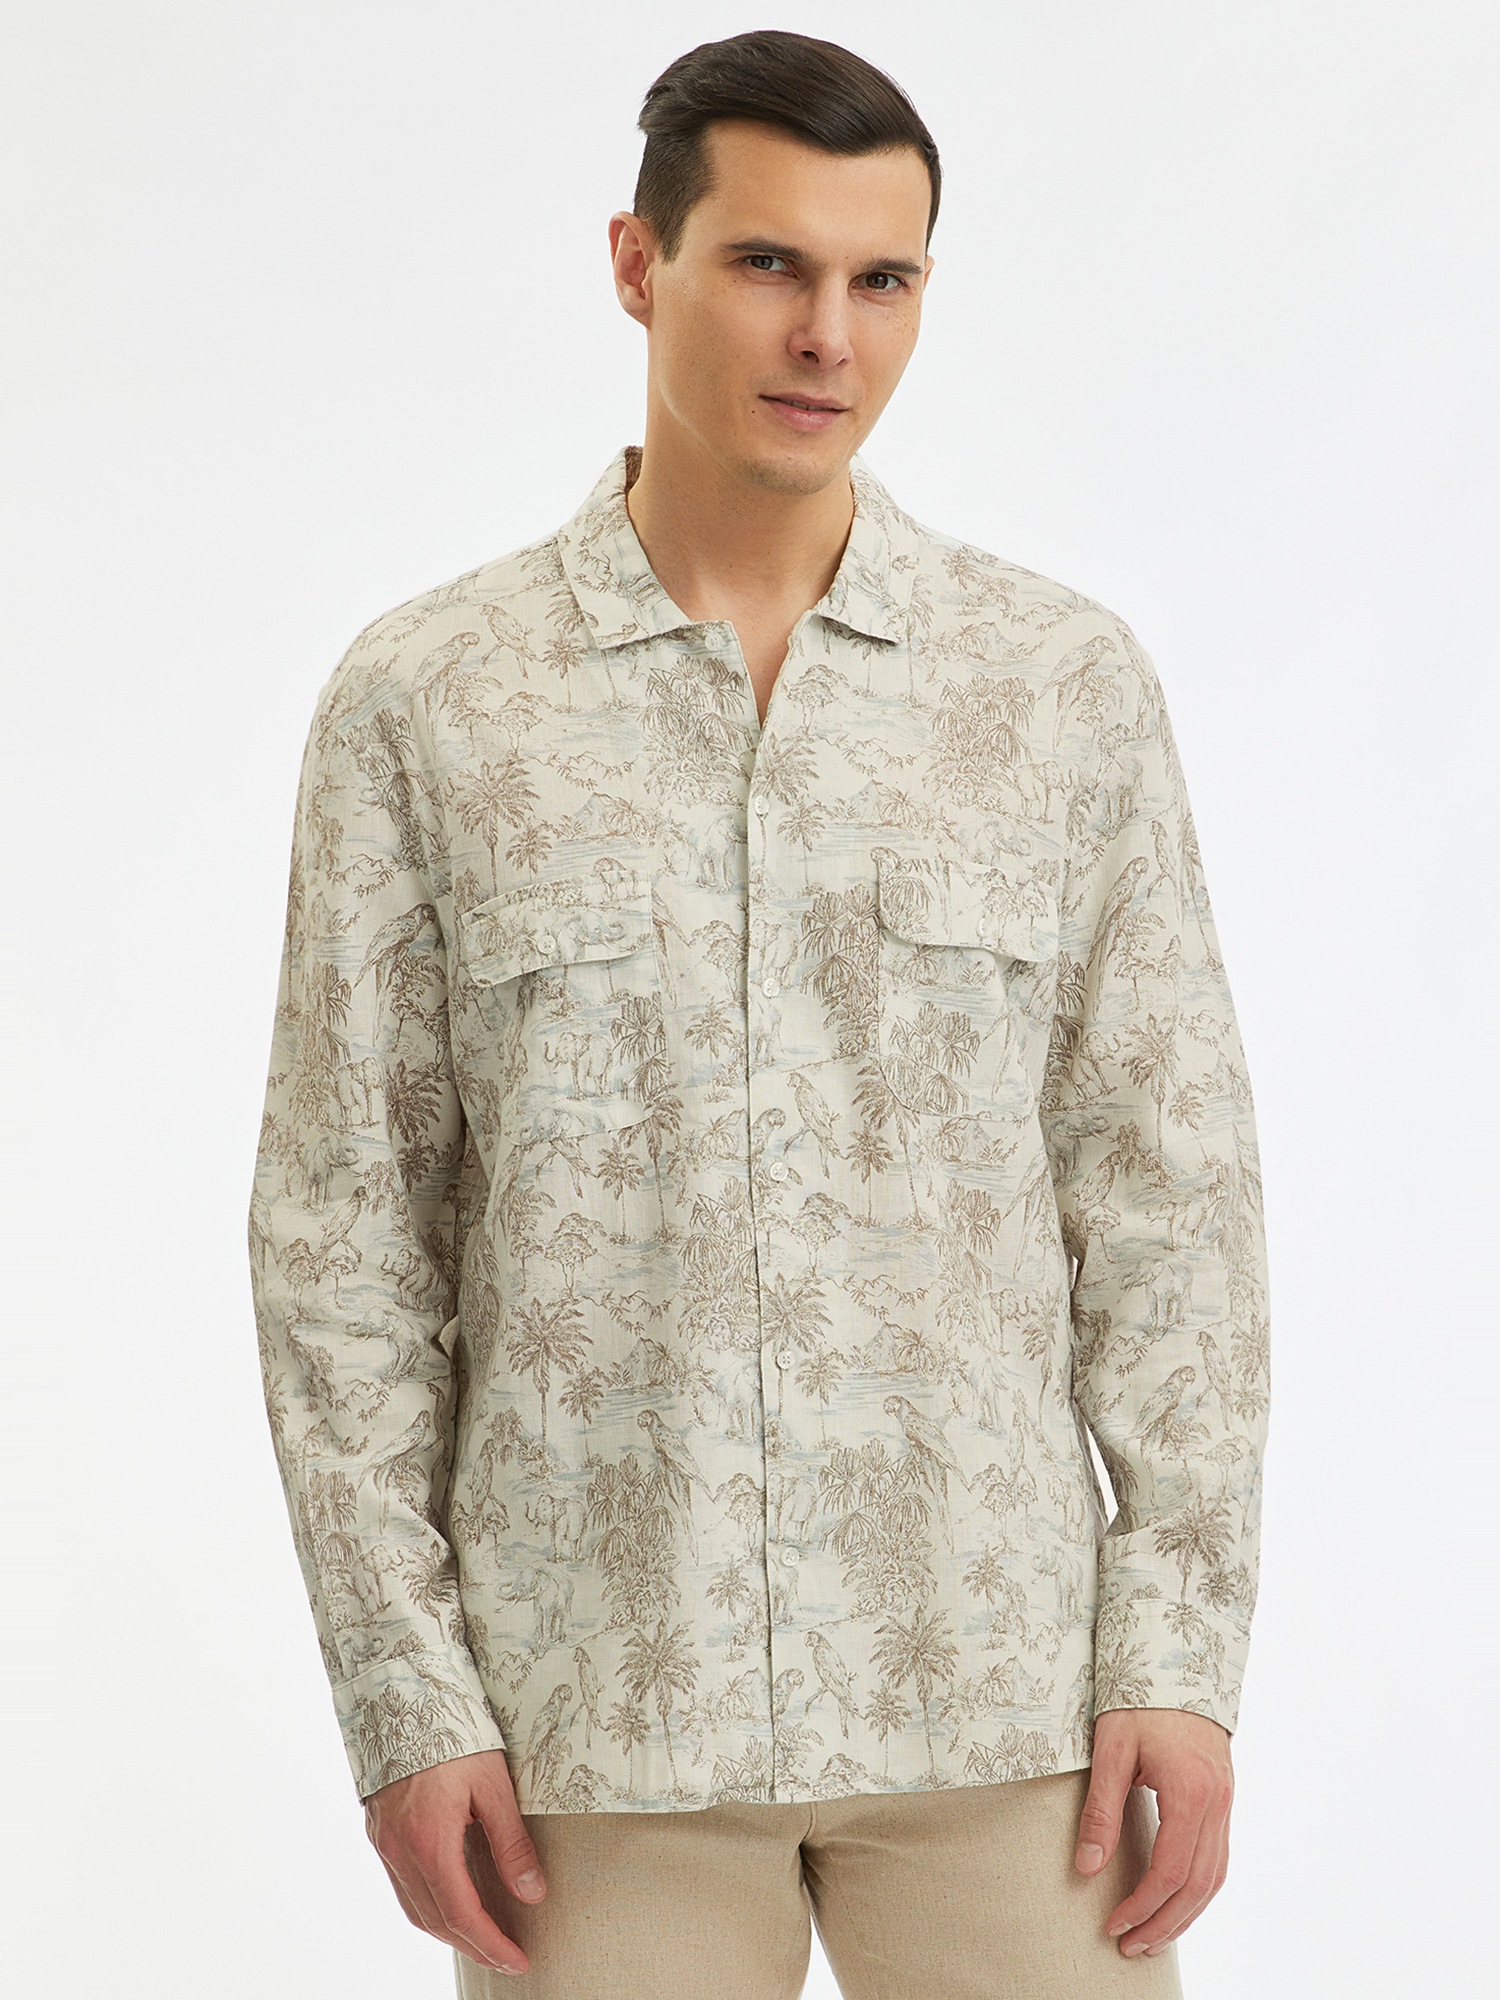 Рубашка мужская oodji 3L330007M-2 бежевая XL